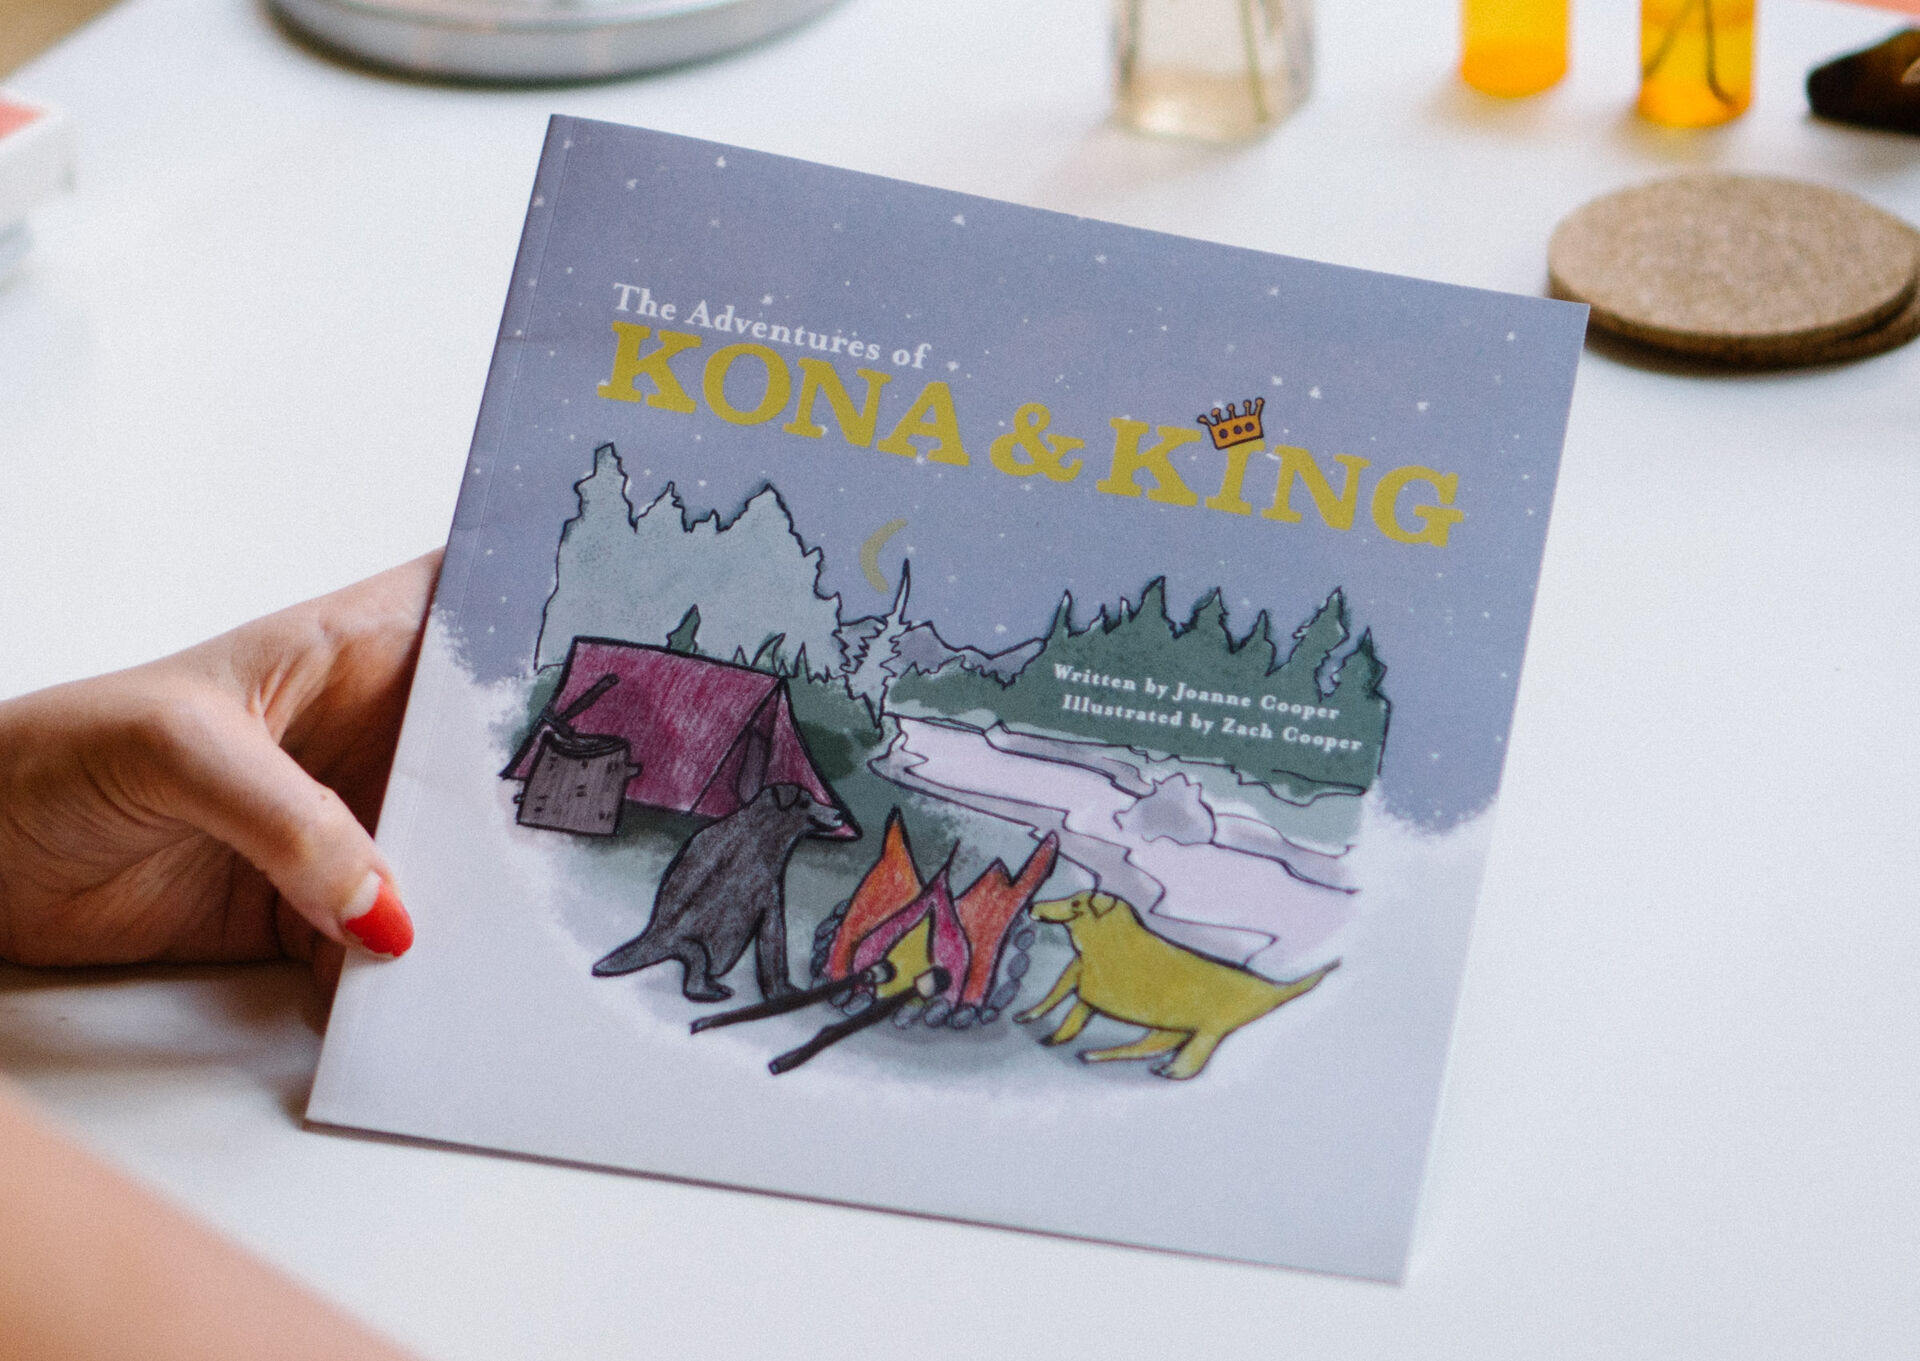 The Adventures of Kona & King Children's Book